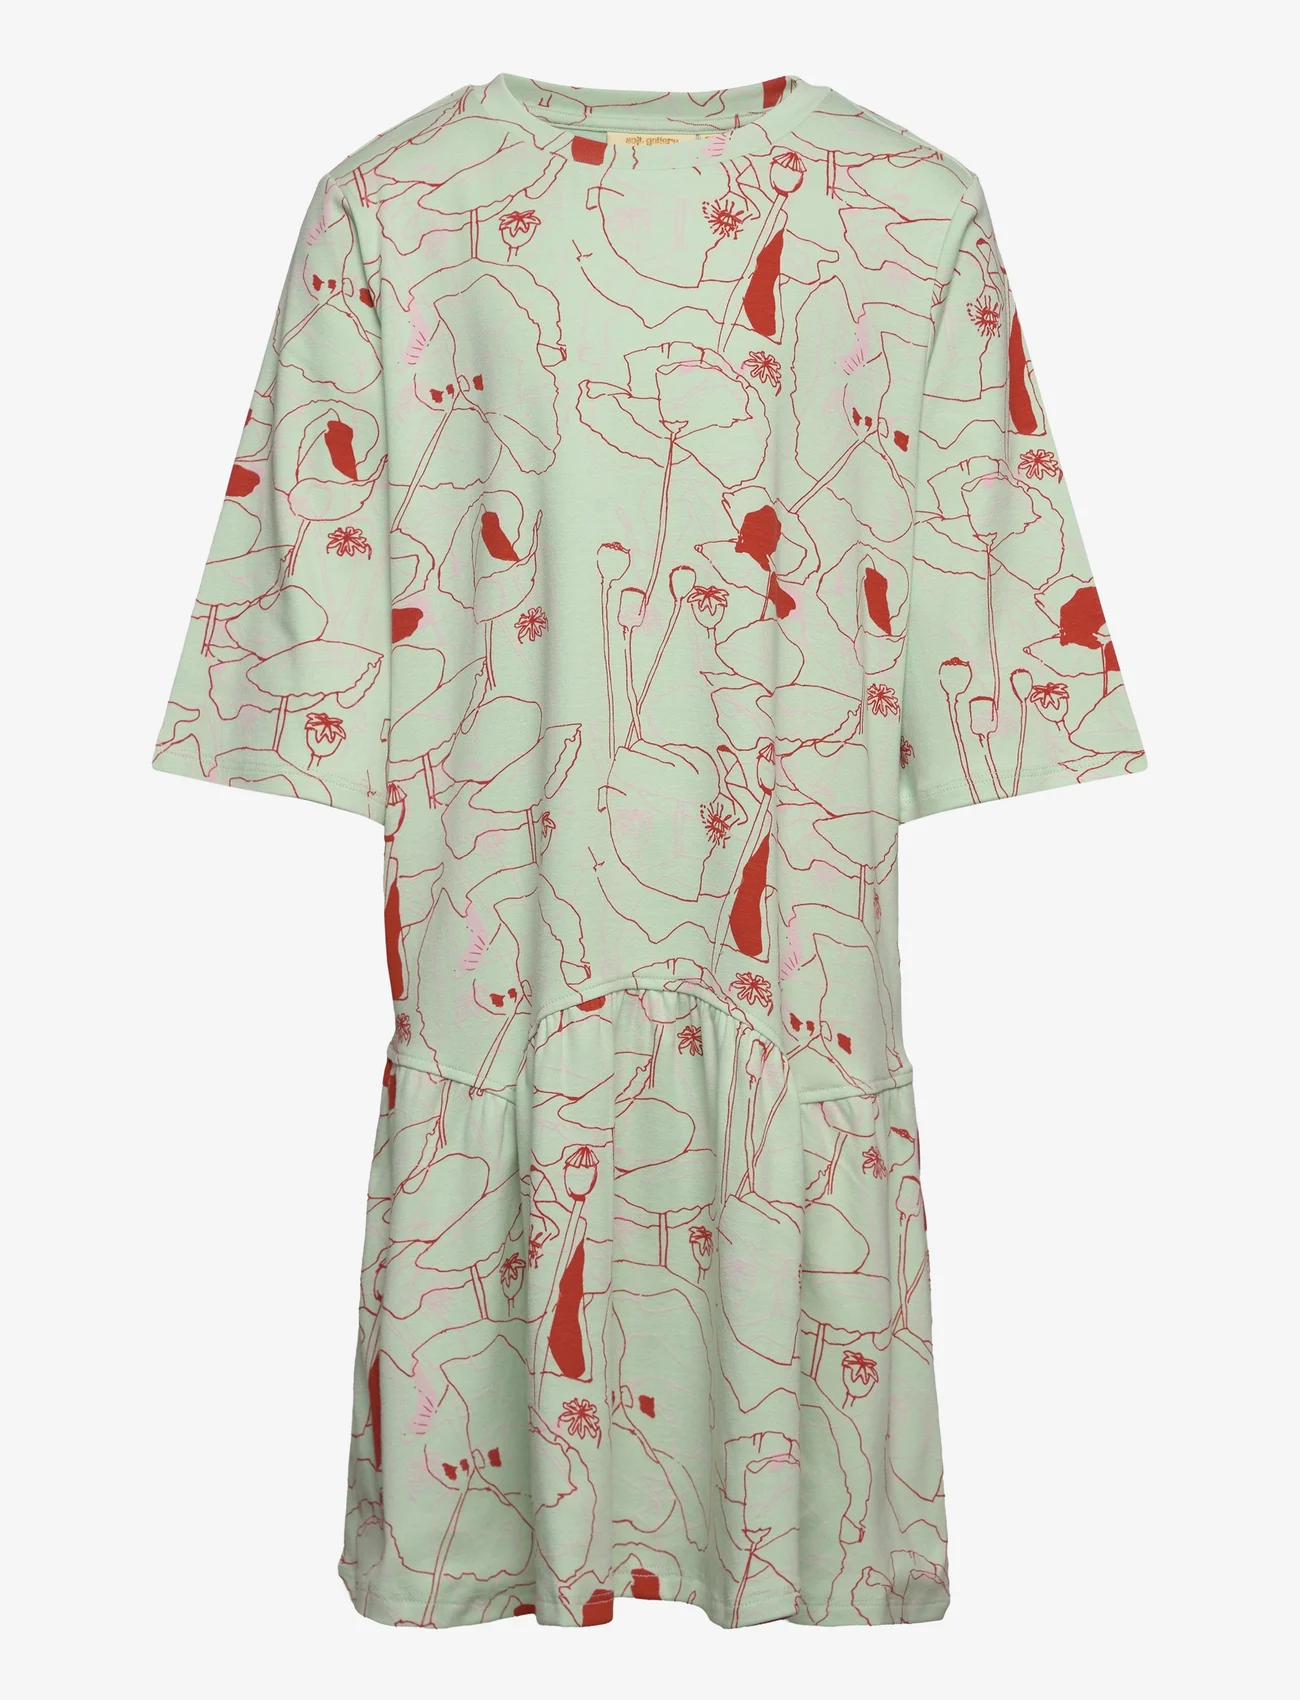 Soft Gallery - SGLinny Poppy SS Dress - sukienki codzienne z krótkim rękawem - misty jade - 0